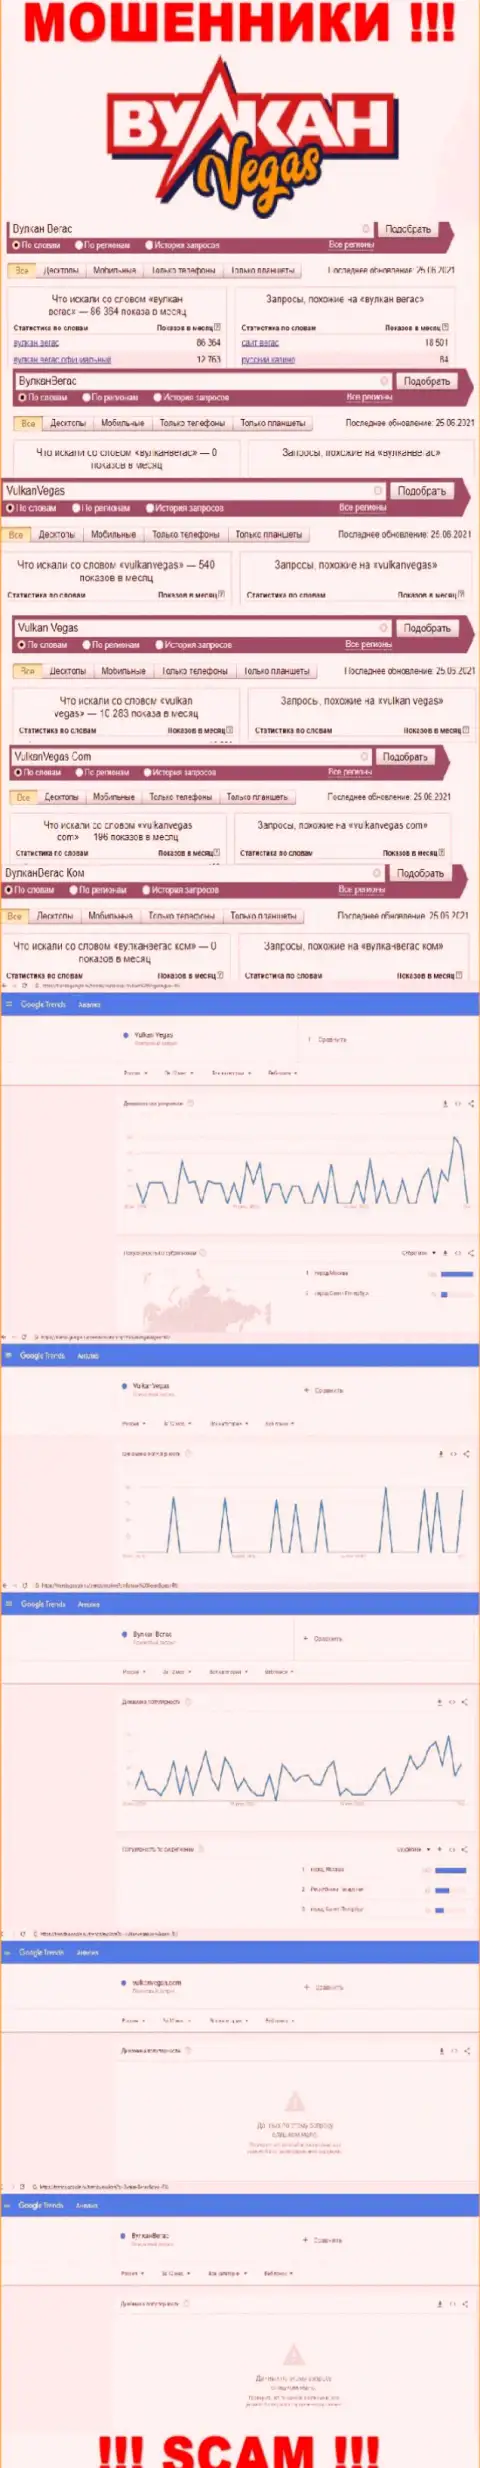 Количество online запросов данных о жуликах Вулкан Вегас в интернет сети